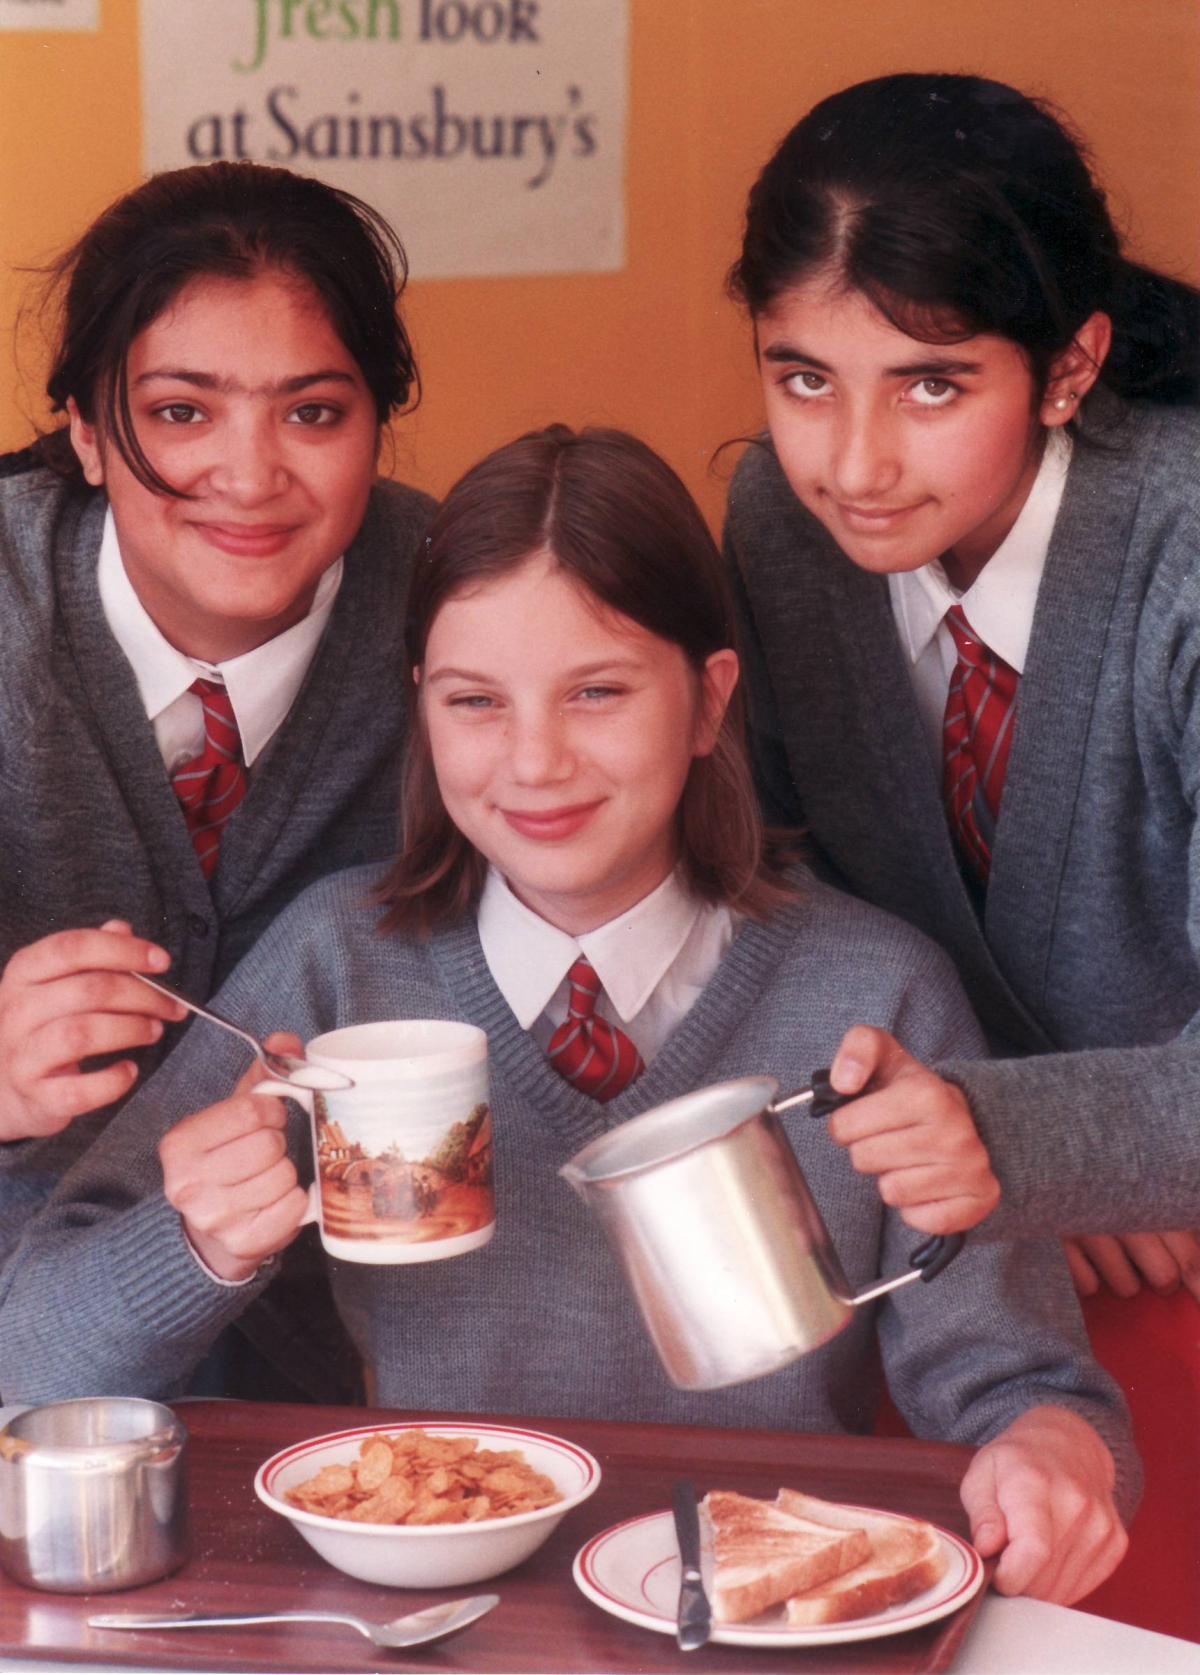 Girls enjoy breakfast in 1997